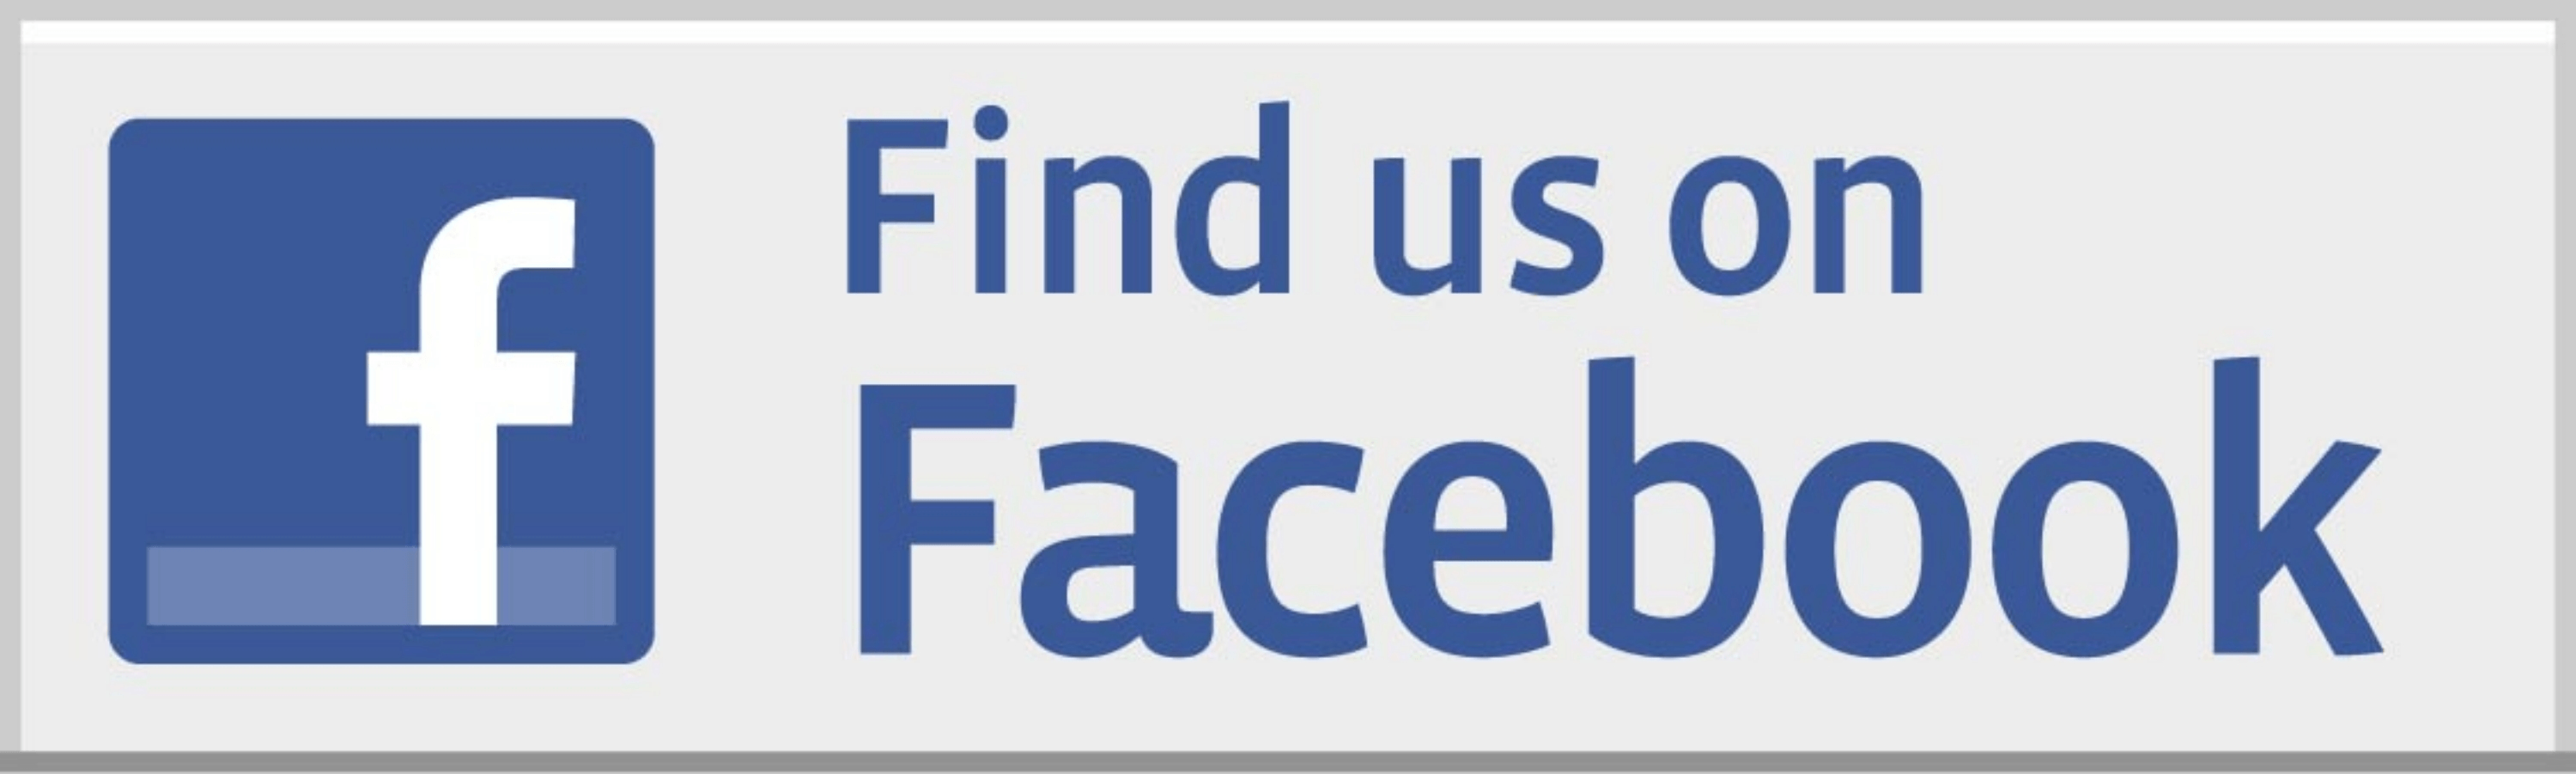 Find Us On Facebook Logo - Facebook Logo